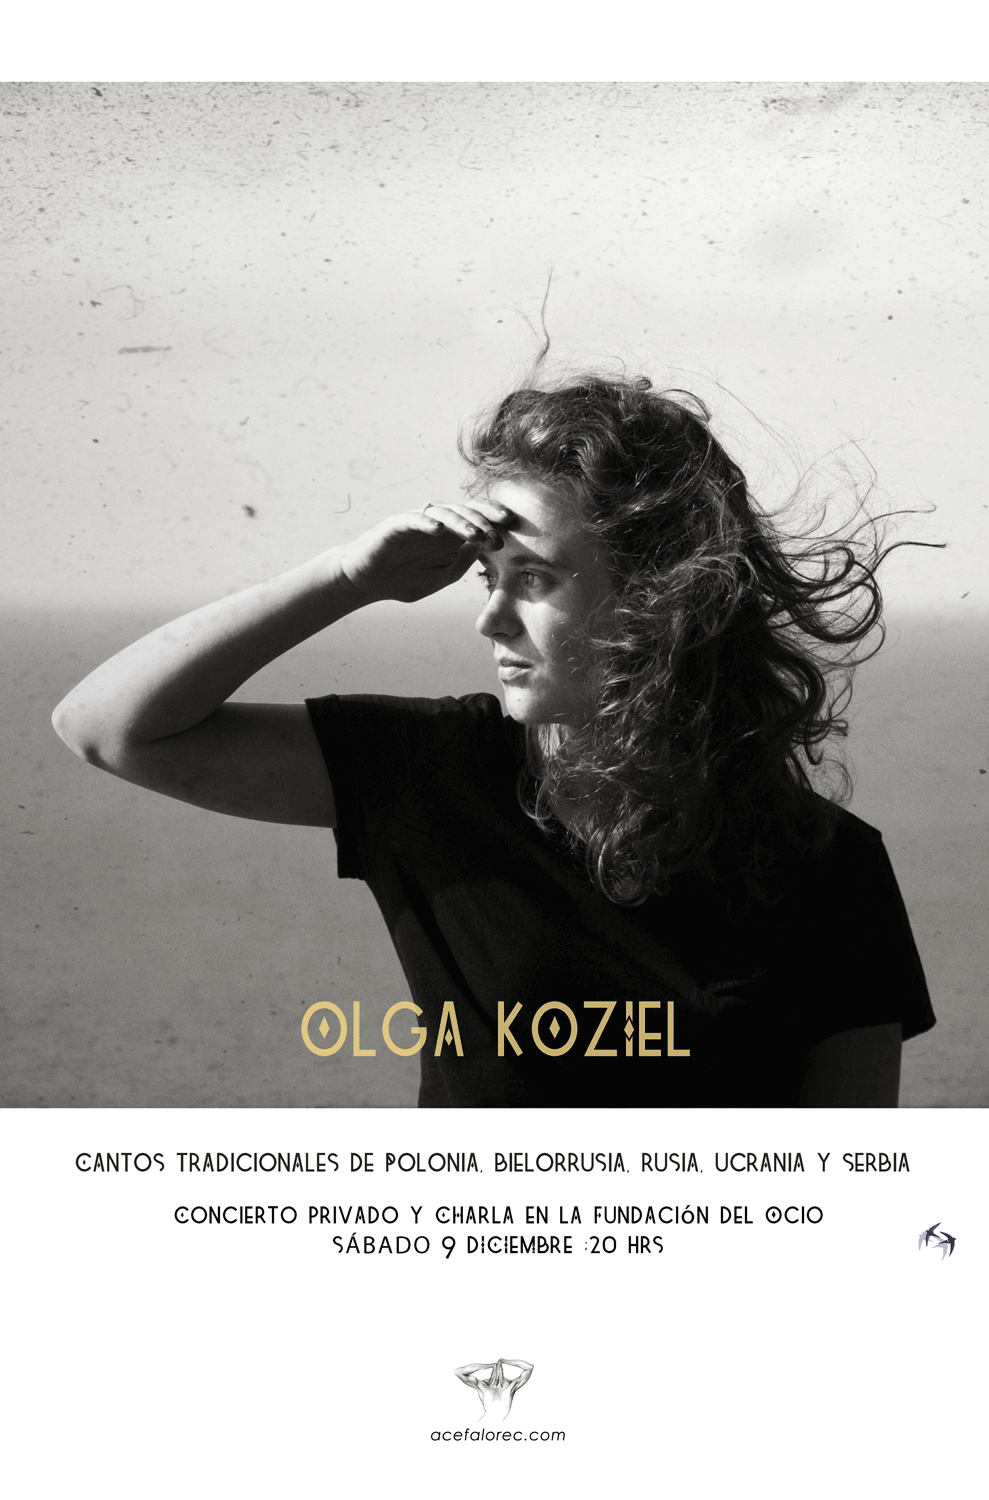 Olga Koziel / cantos tradicionales desde Polonia / 9 Dic 2017